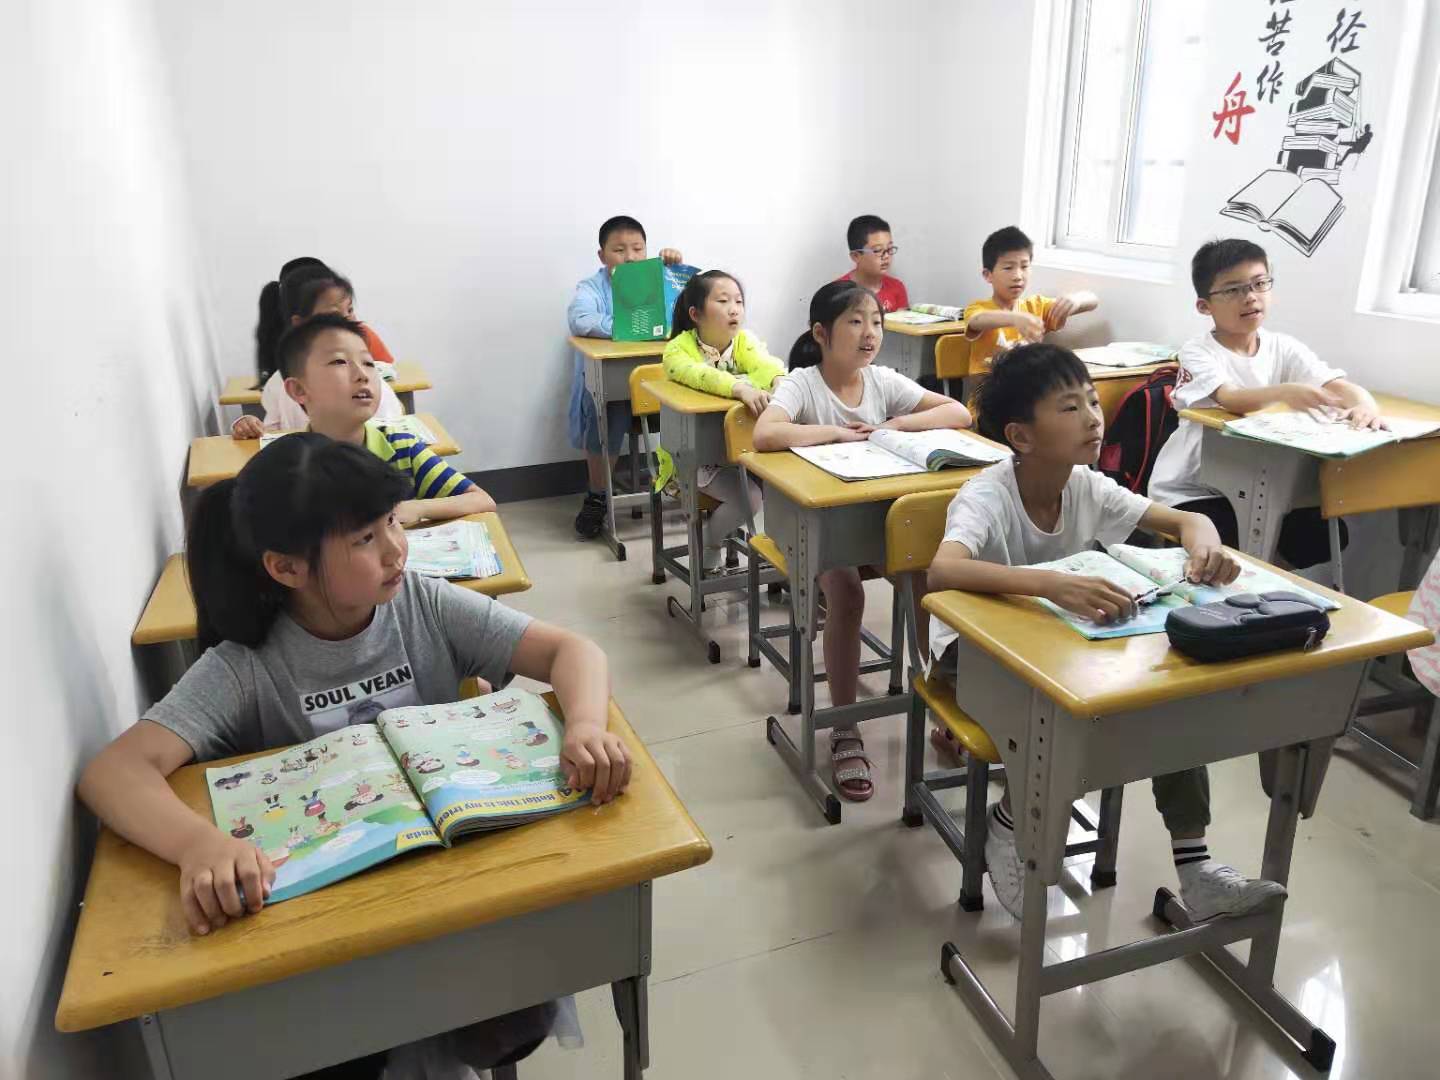 扬州小荷教育培训中心被授予剑桥CICE英语邗江区考点